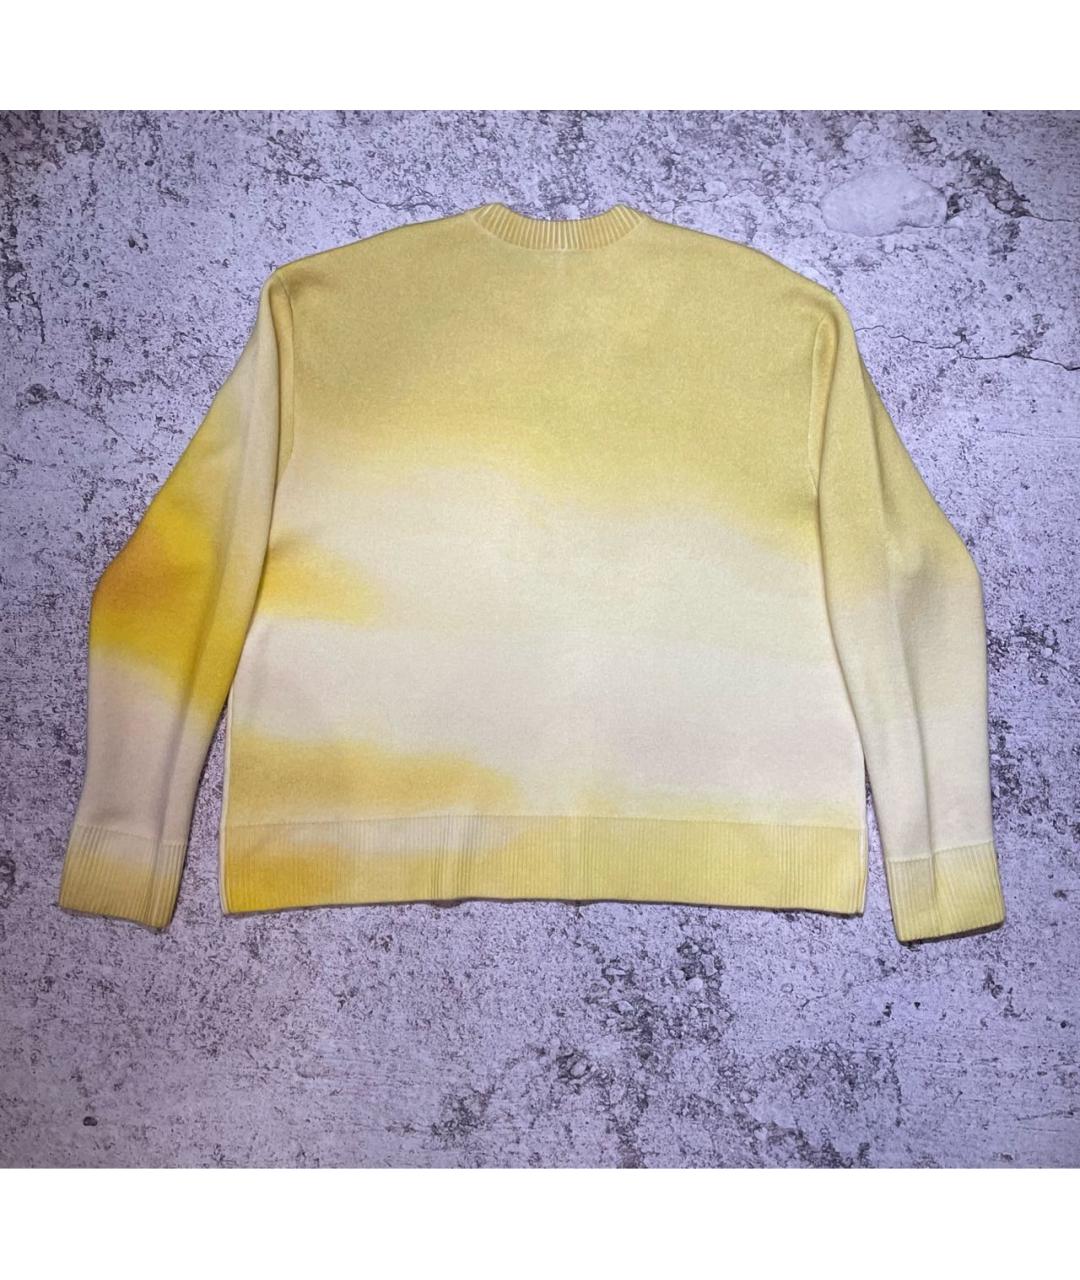 A-COLD-WALL* Желтый шерстяной джемпер / свитер, фото 2